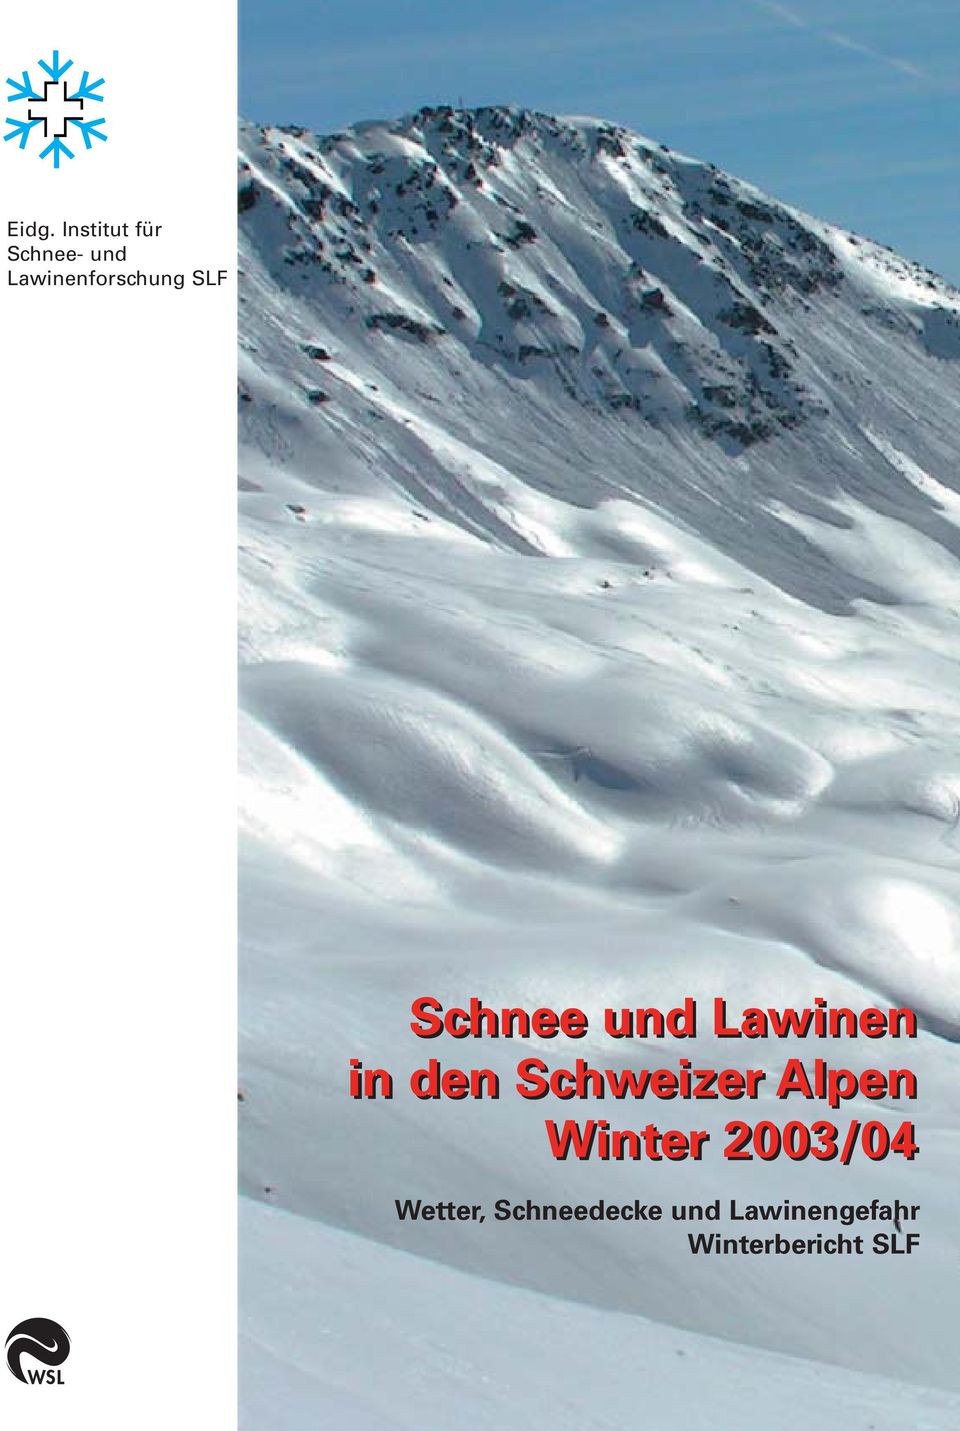 in den Schweizer Alpen Winter 2003/04